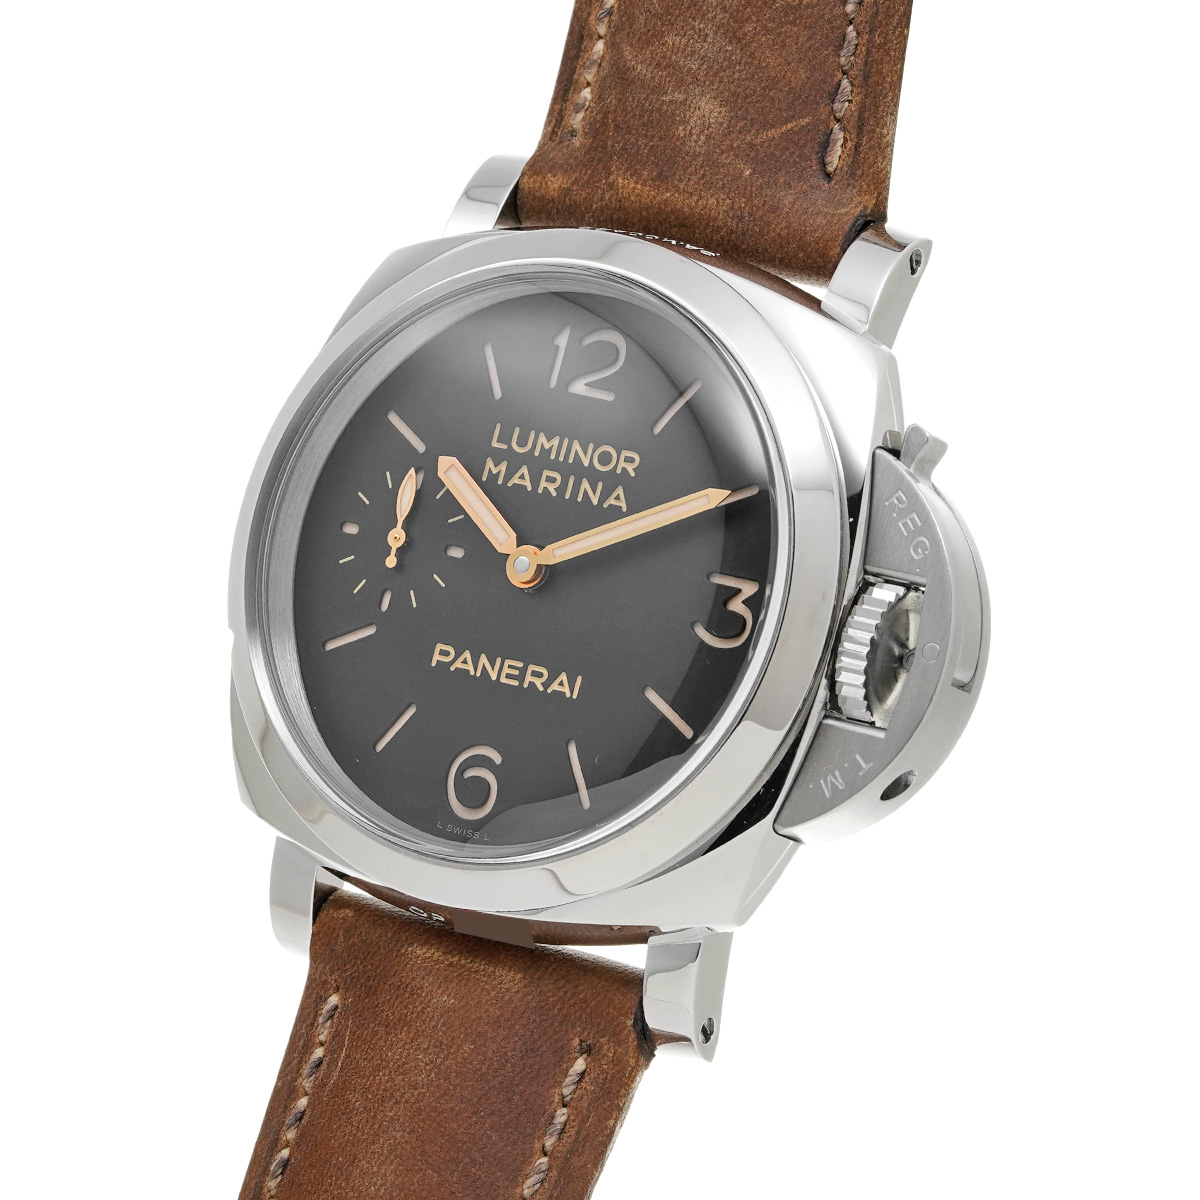 PANERAI ルミノールマリーナ 1950 3デイズ アッチャイオ PAM00422 メンズ腕時計